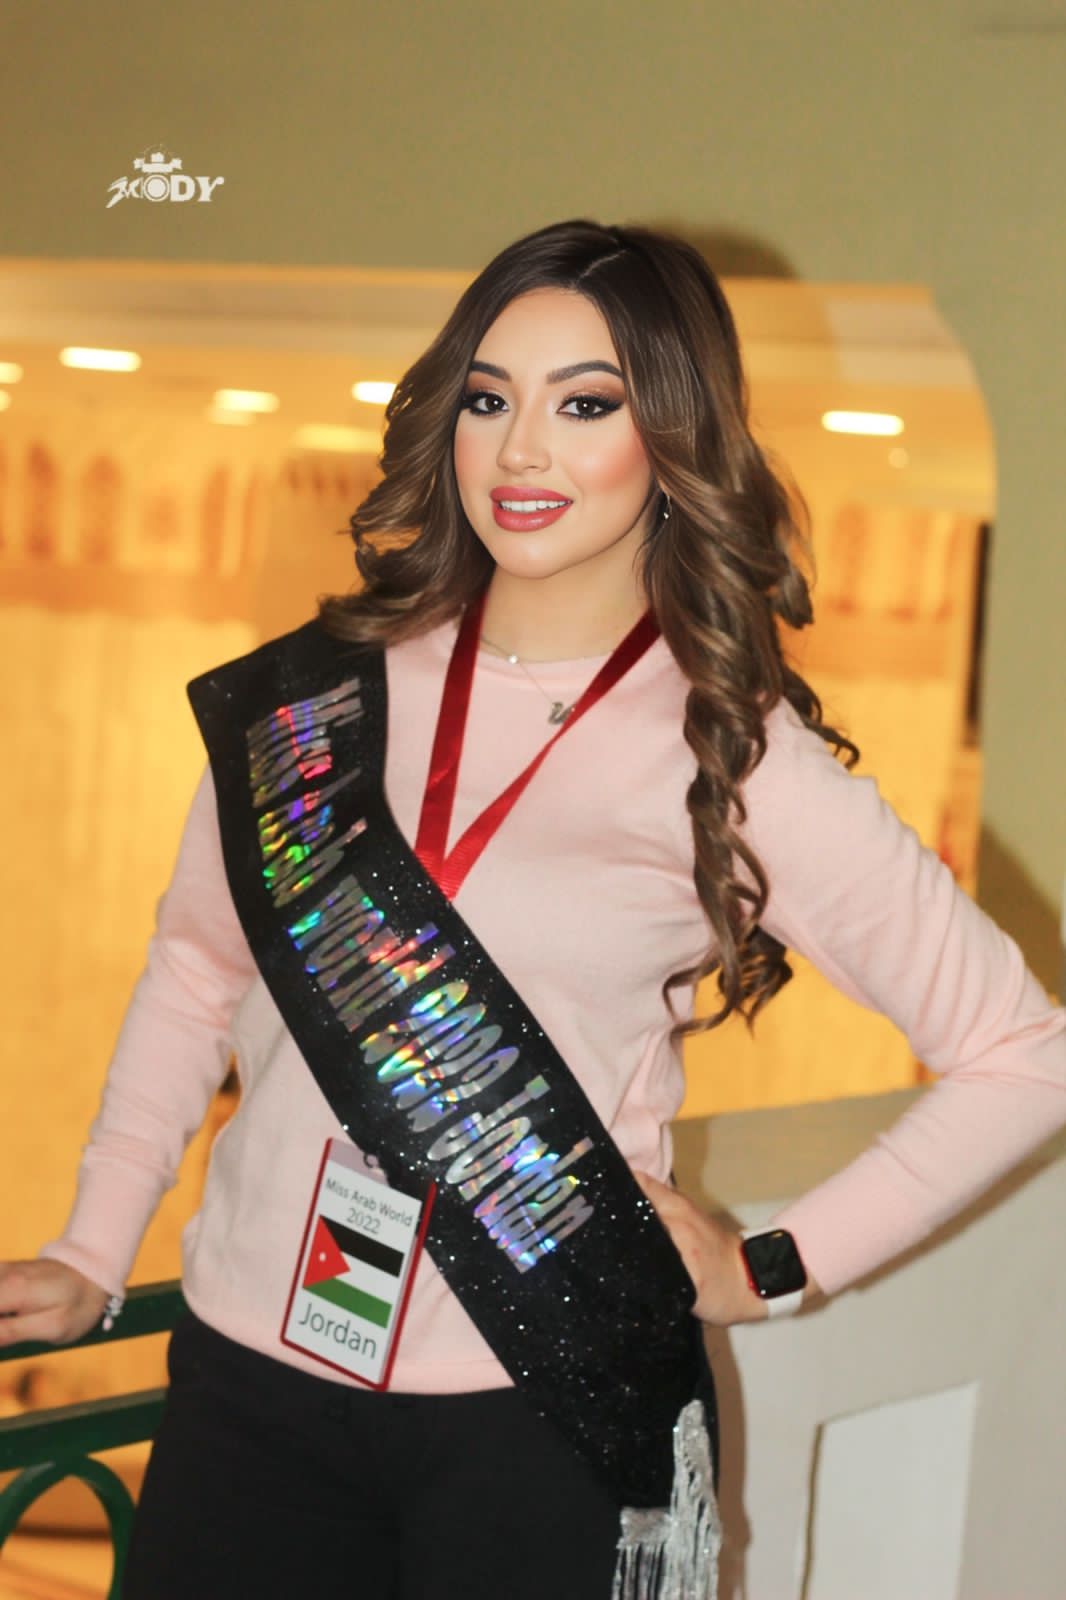 Samah Jarrar represents Jordan in Miss Arabs